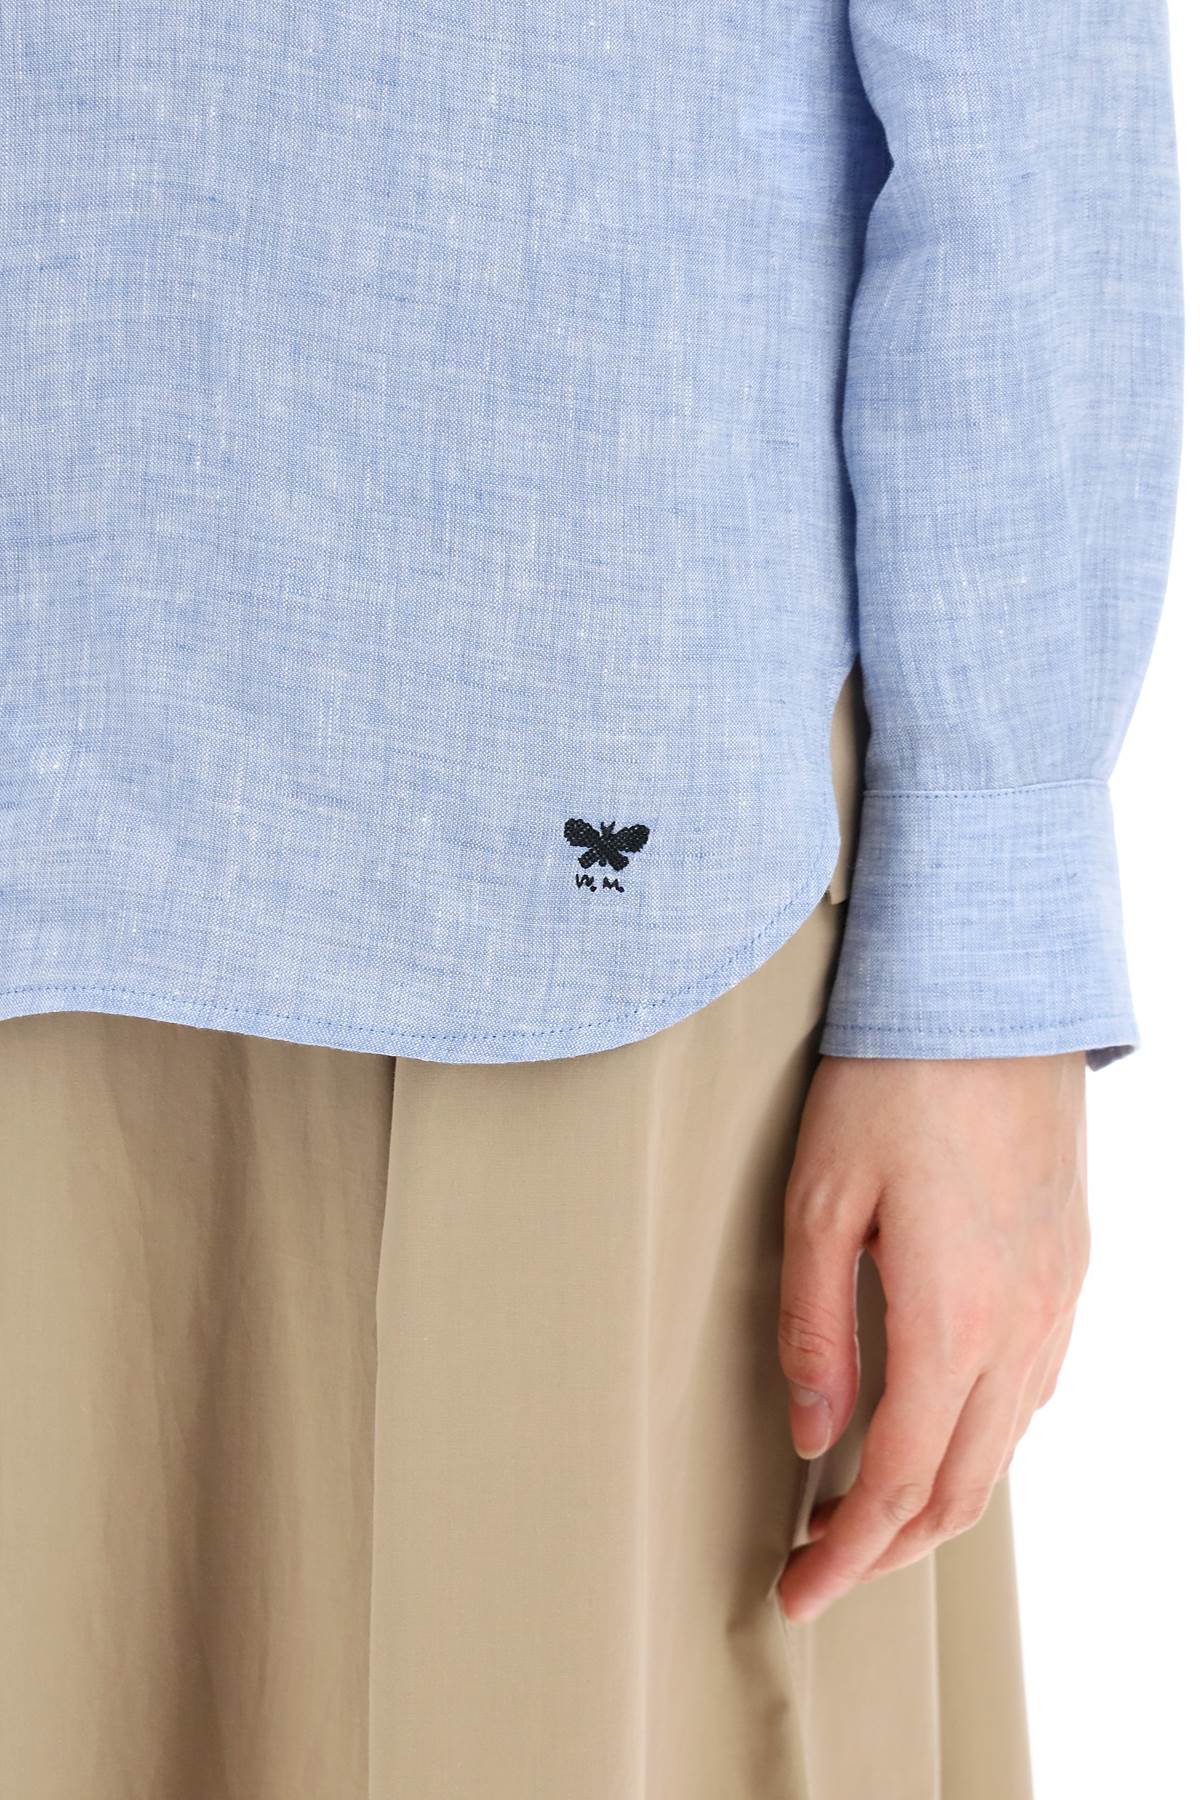 Shop Weekend Max Mara 'werner' Linen Shirt In Light Blue